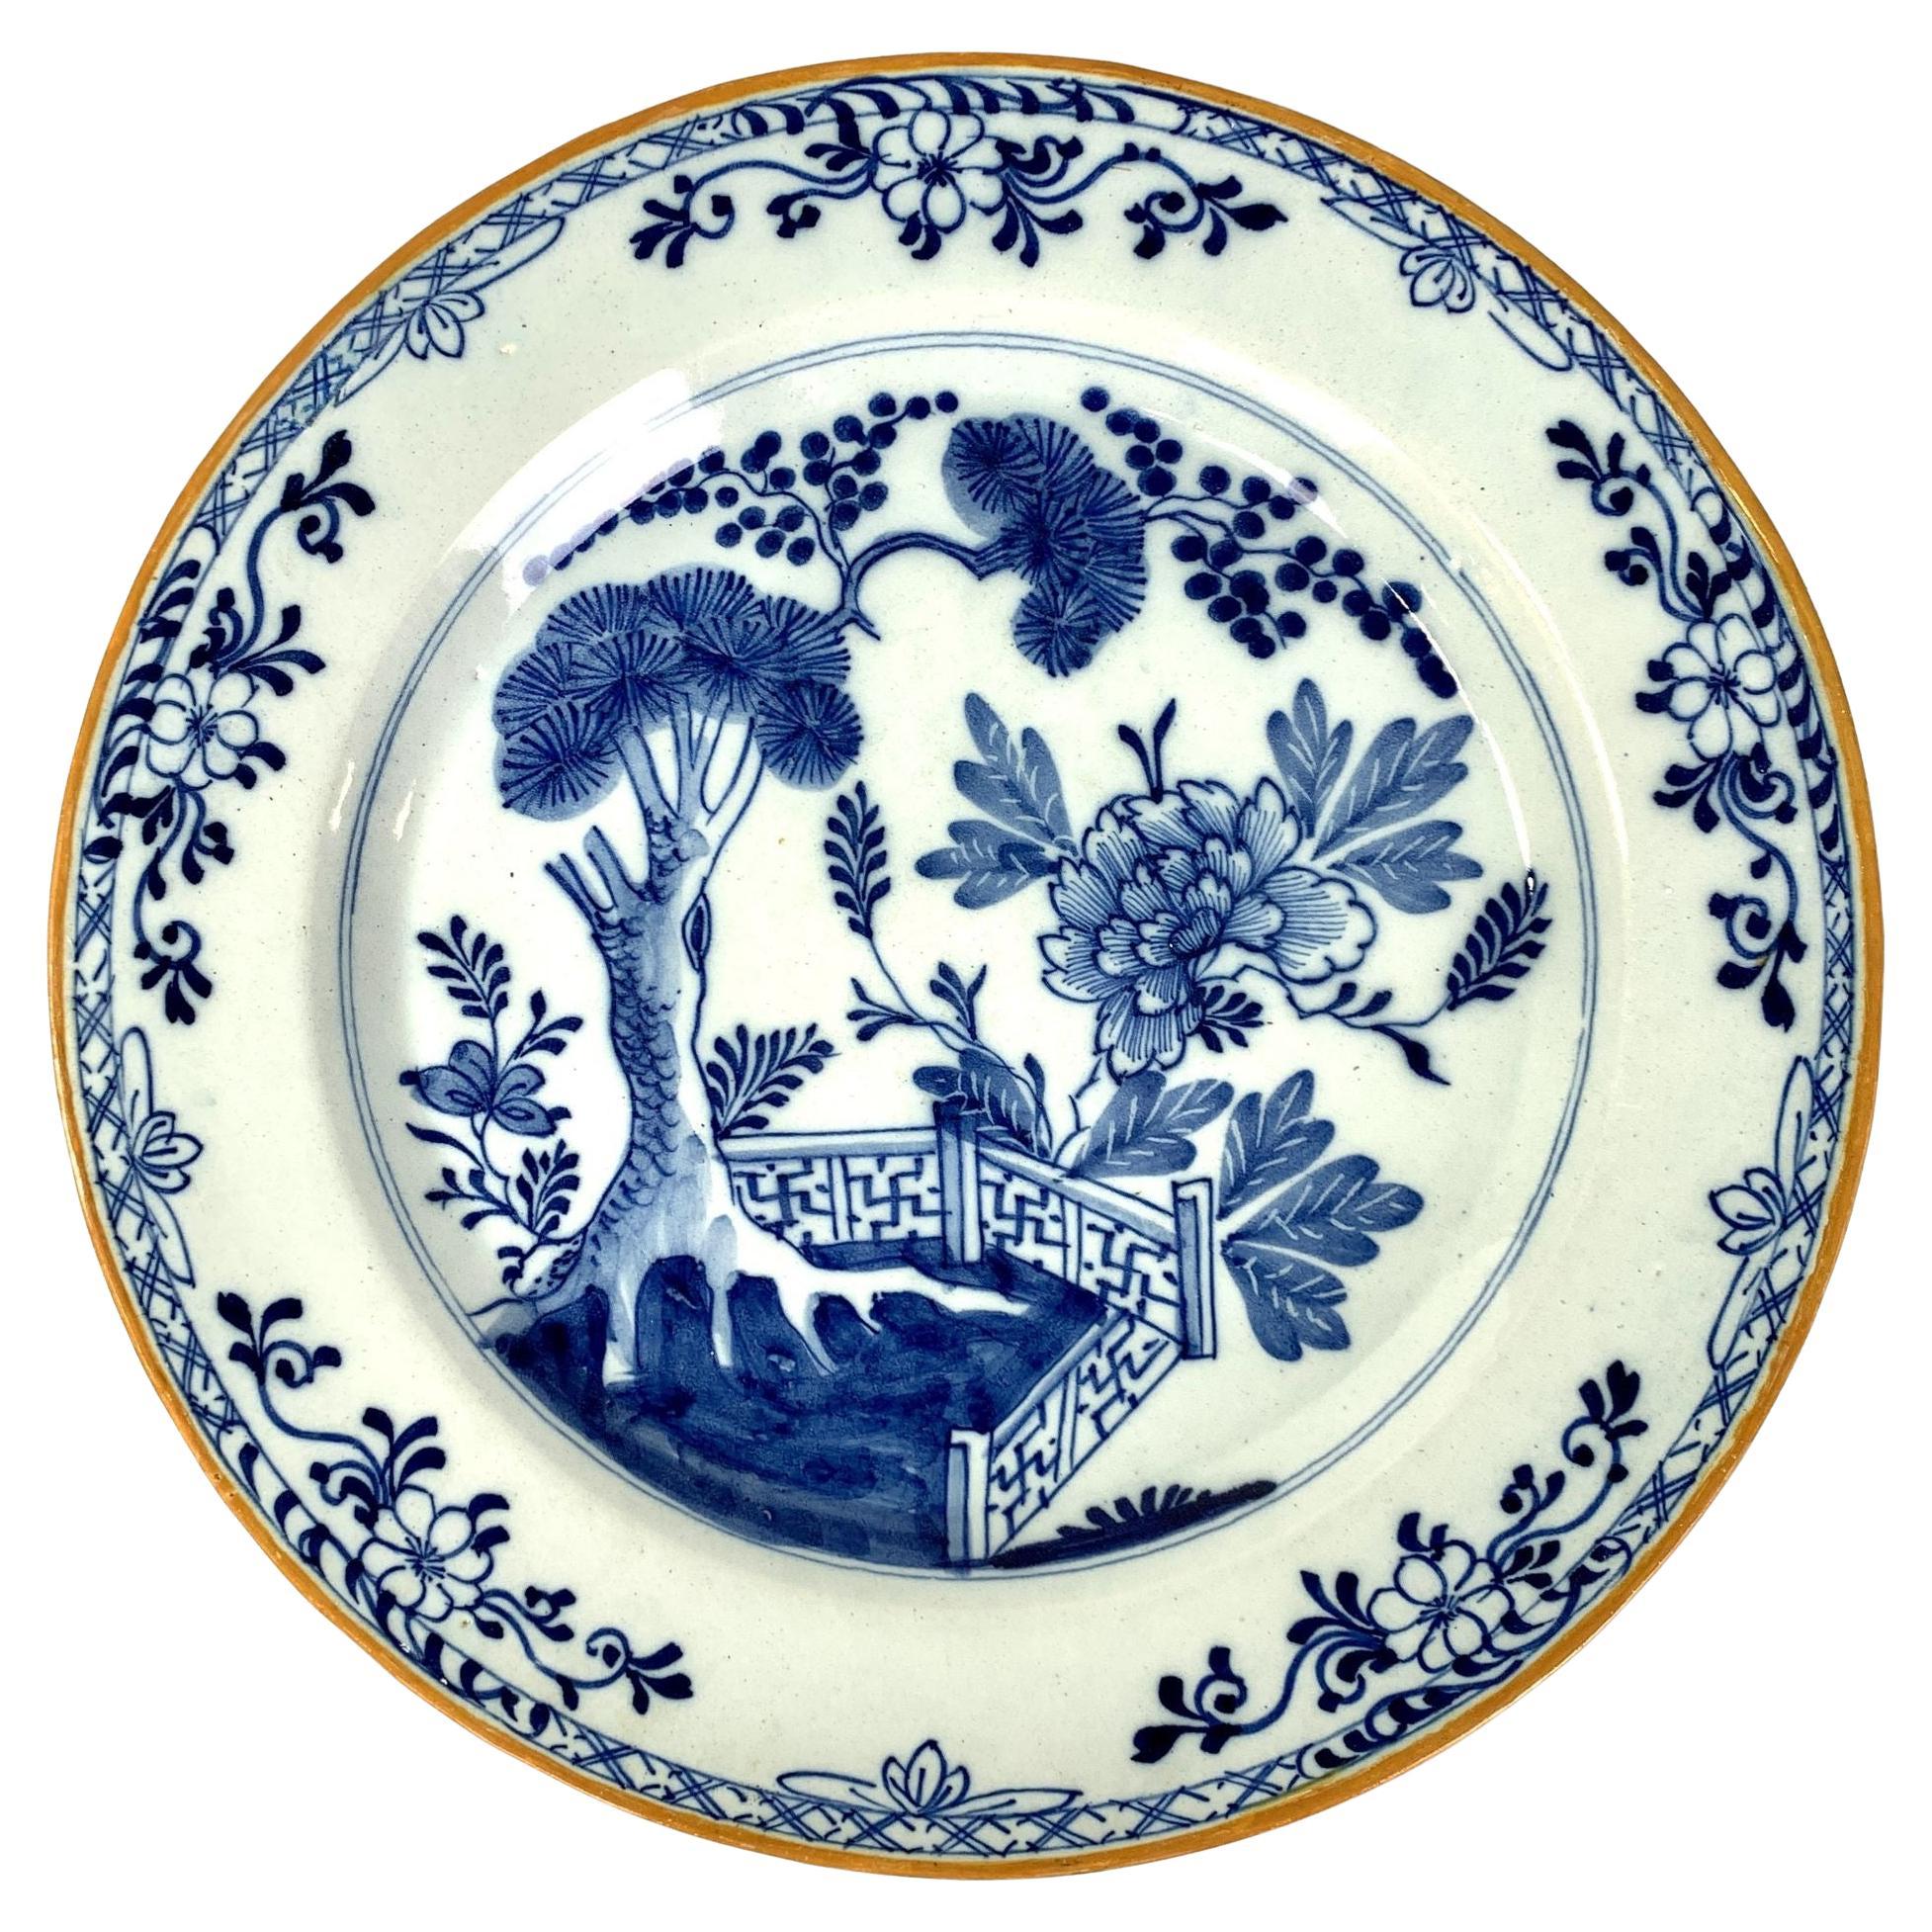 Assiette de présentation hollandaise en faïence de Delft bleue et blanche datant d'environ 1780 avec la marque « The Axe »